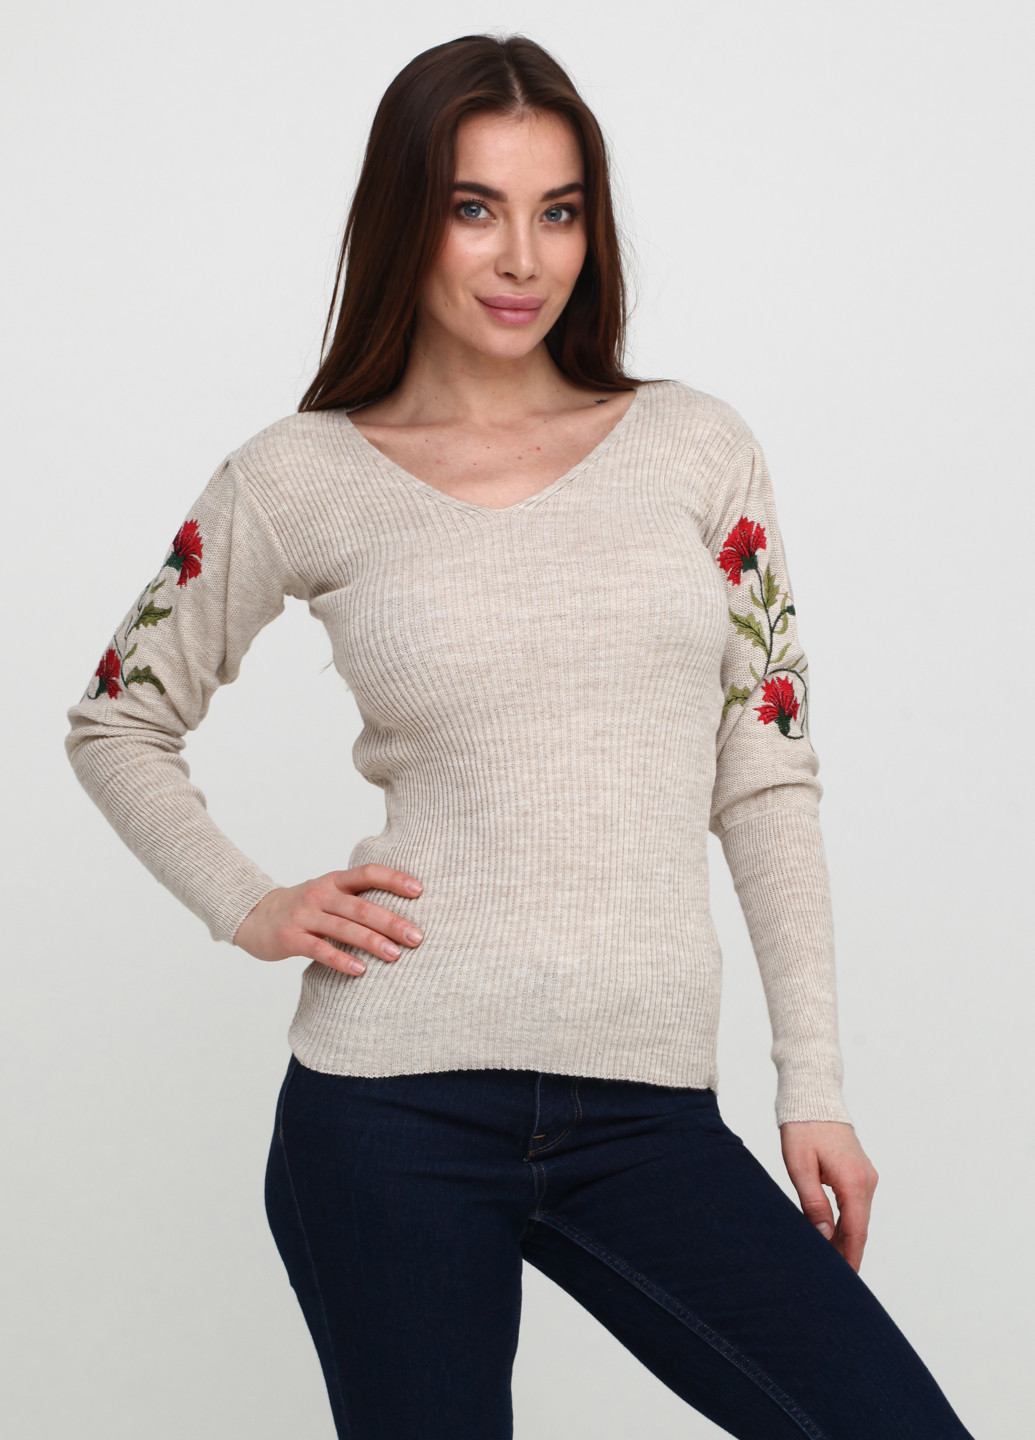 Светло-бежевый демисезонный пуловер пуловер Metin Triko